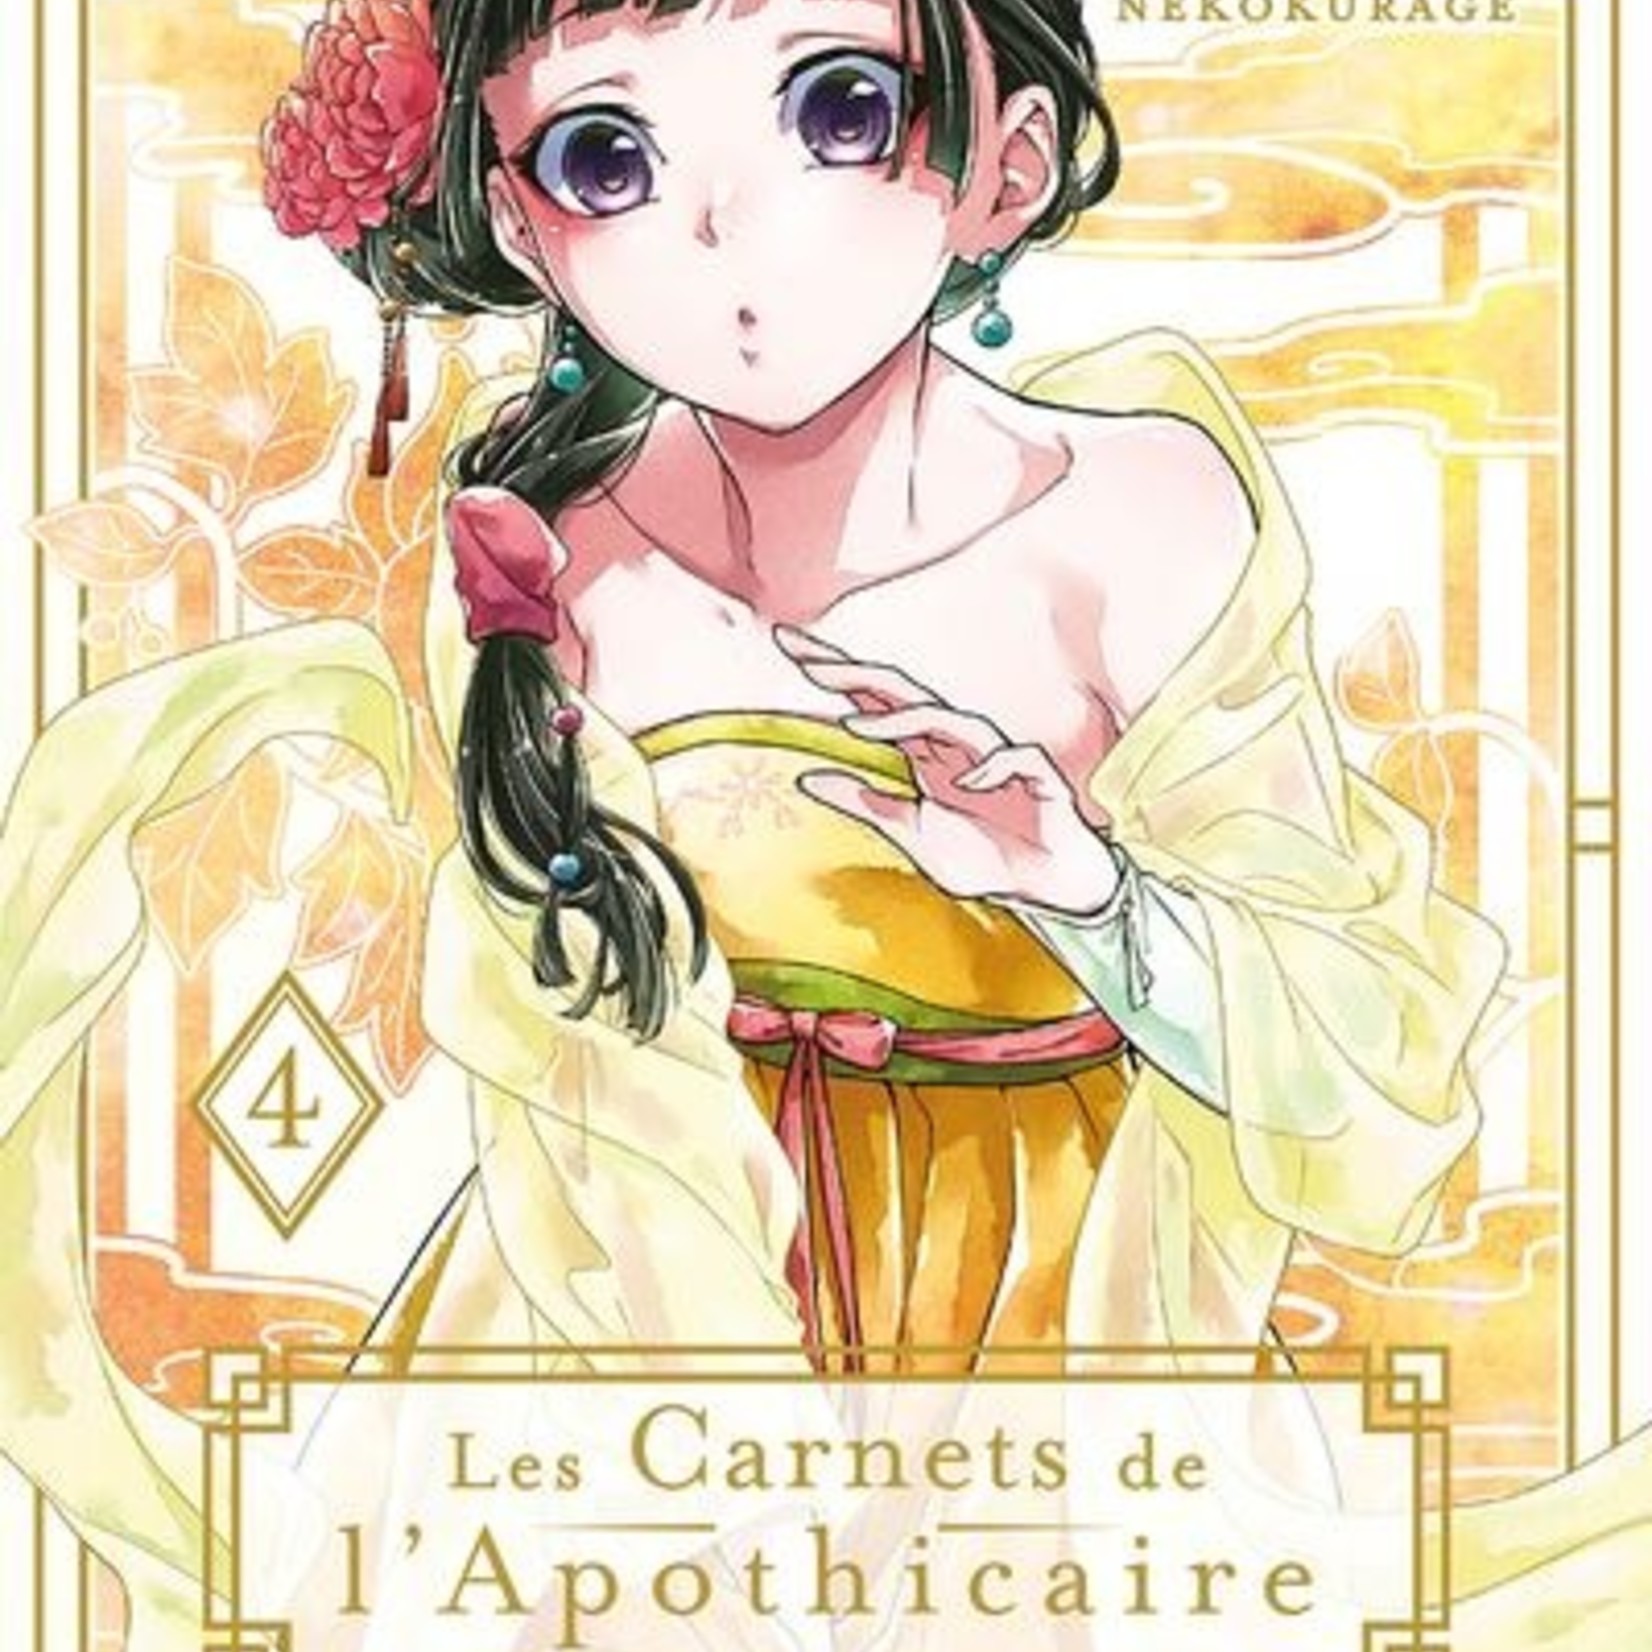 Ki-oon Manga - Les Carnets de l'Apothicaire Tome 04